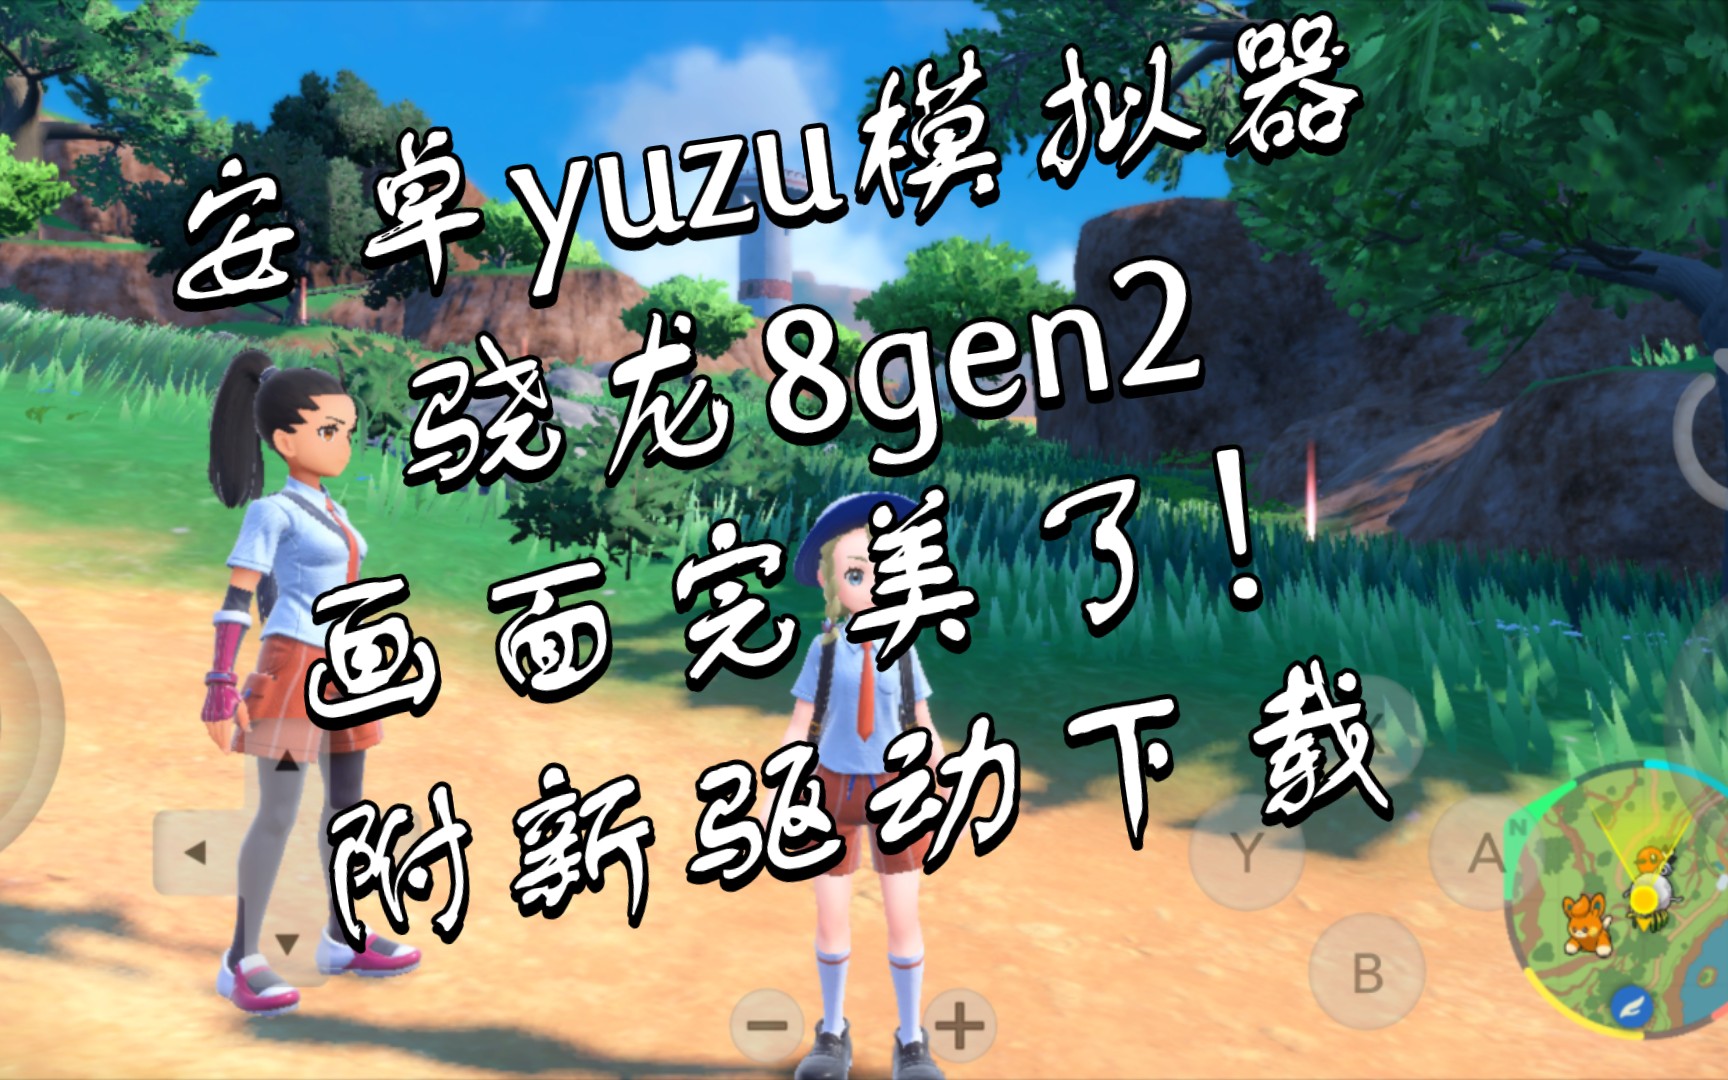 【分享】骁龙8gen2 用最新驱动《宝可梦朱紫》完美了！附新驱动下载。安卓yuzu模拟器,只是帧数还是太低了。红魔8Pro+ skyline之后的另一个前